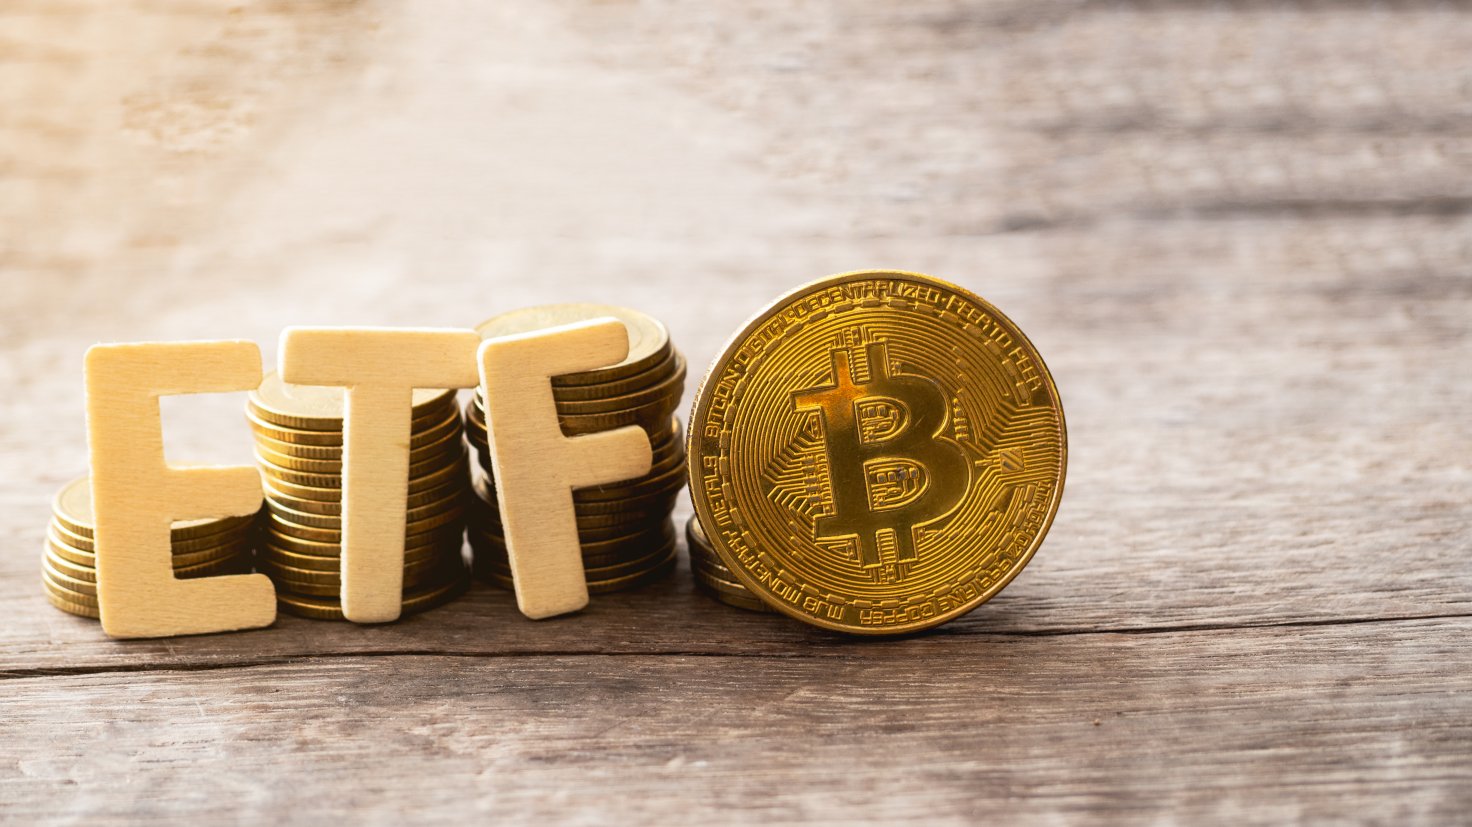 Phí bảo hiểm GBTC sắp đạt mức cao nhất trong năm 2022 khi SEC có khả năng phê duyệt Bitcoin ETF